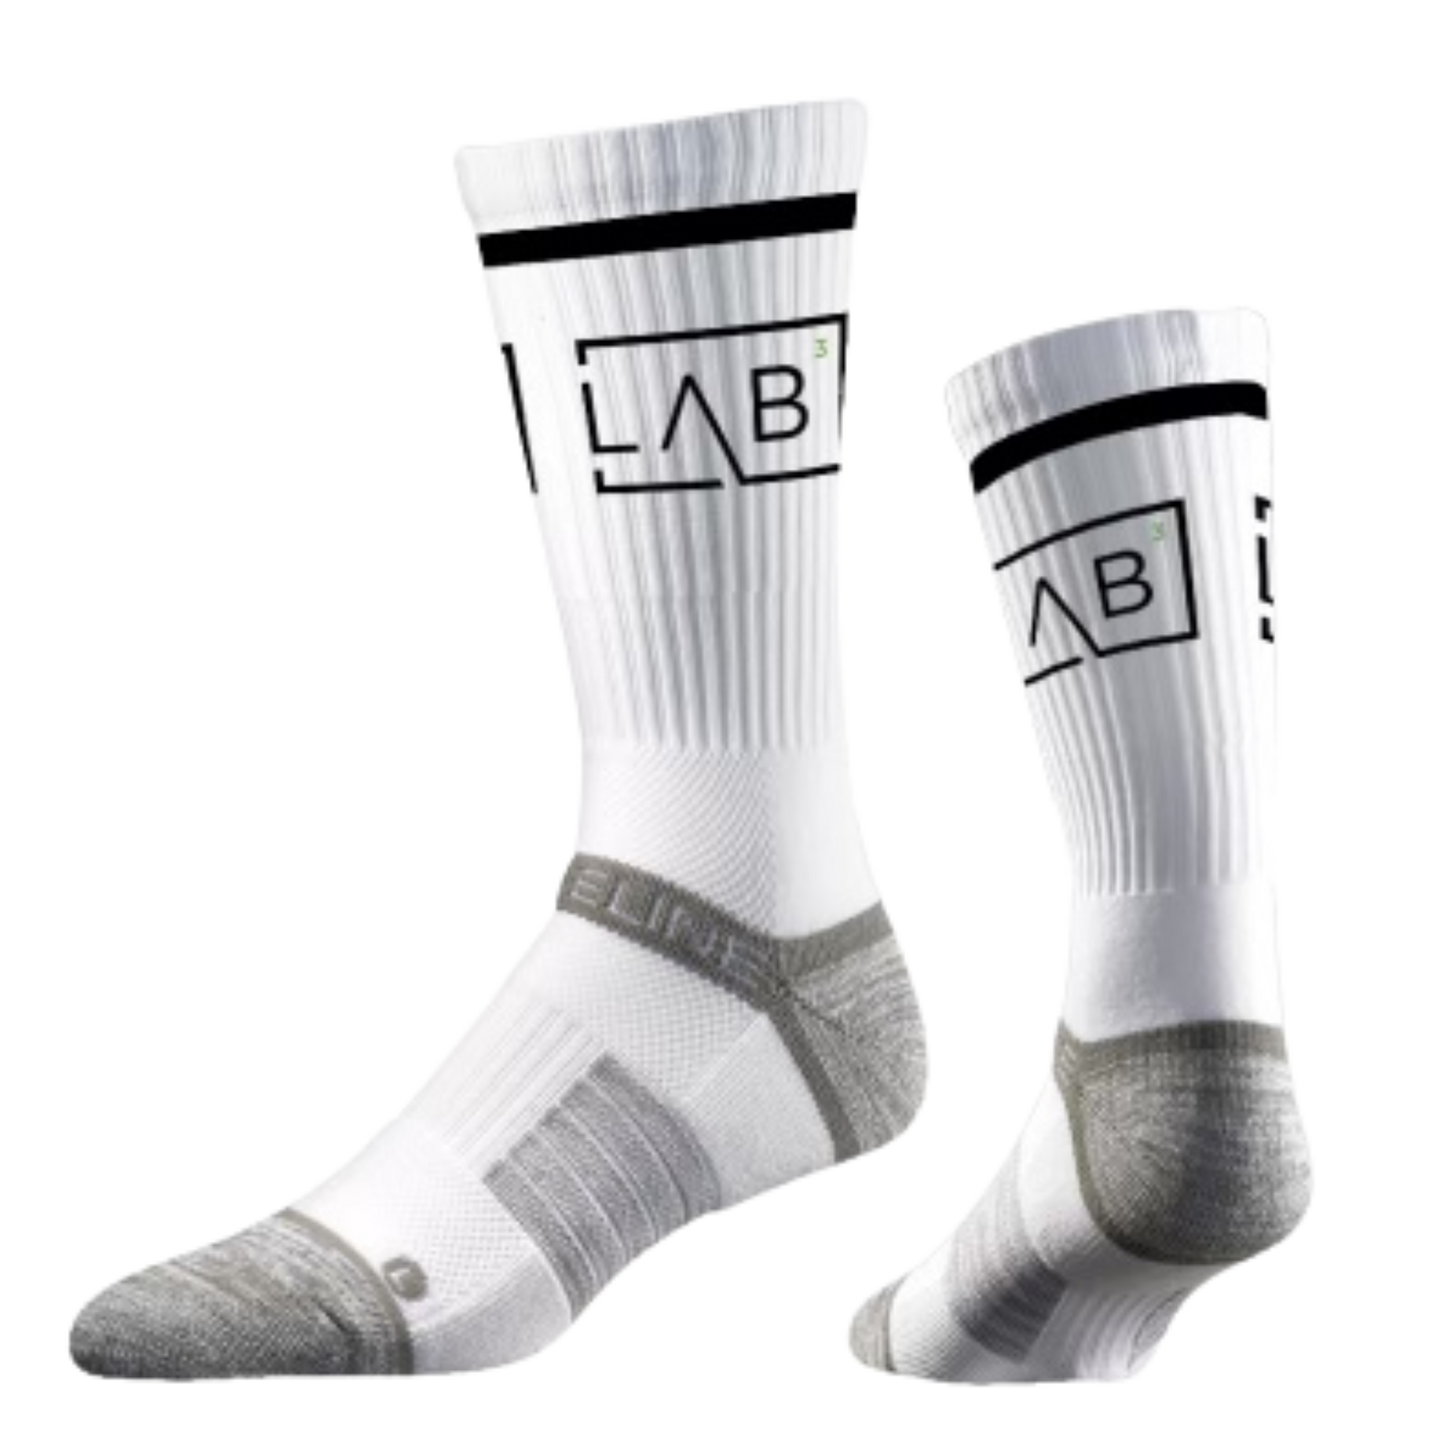 LAB Crew Socks